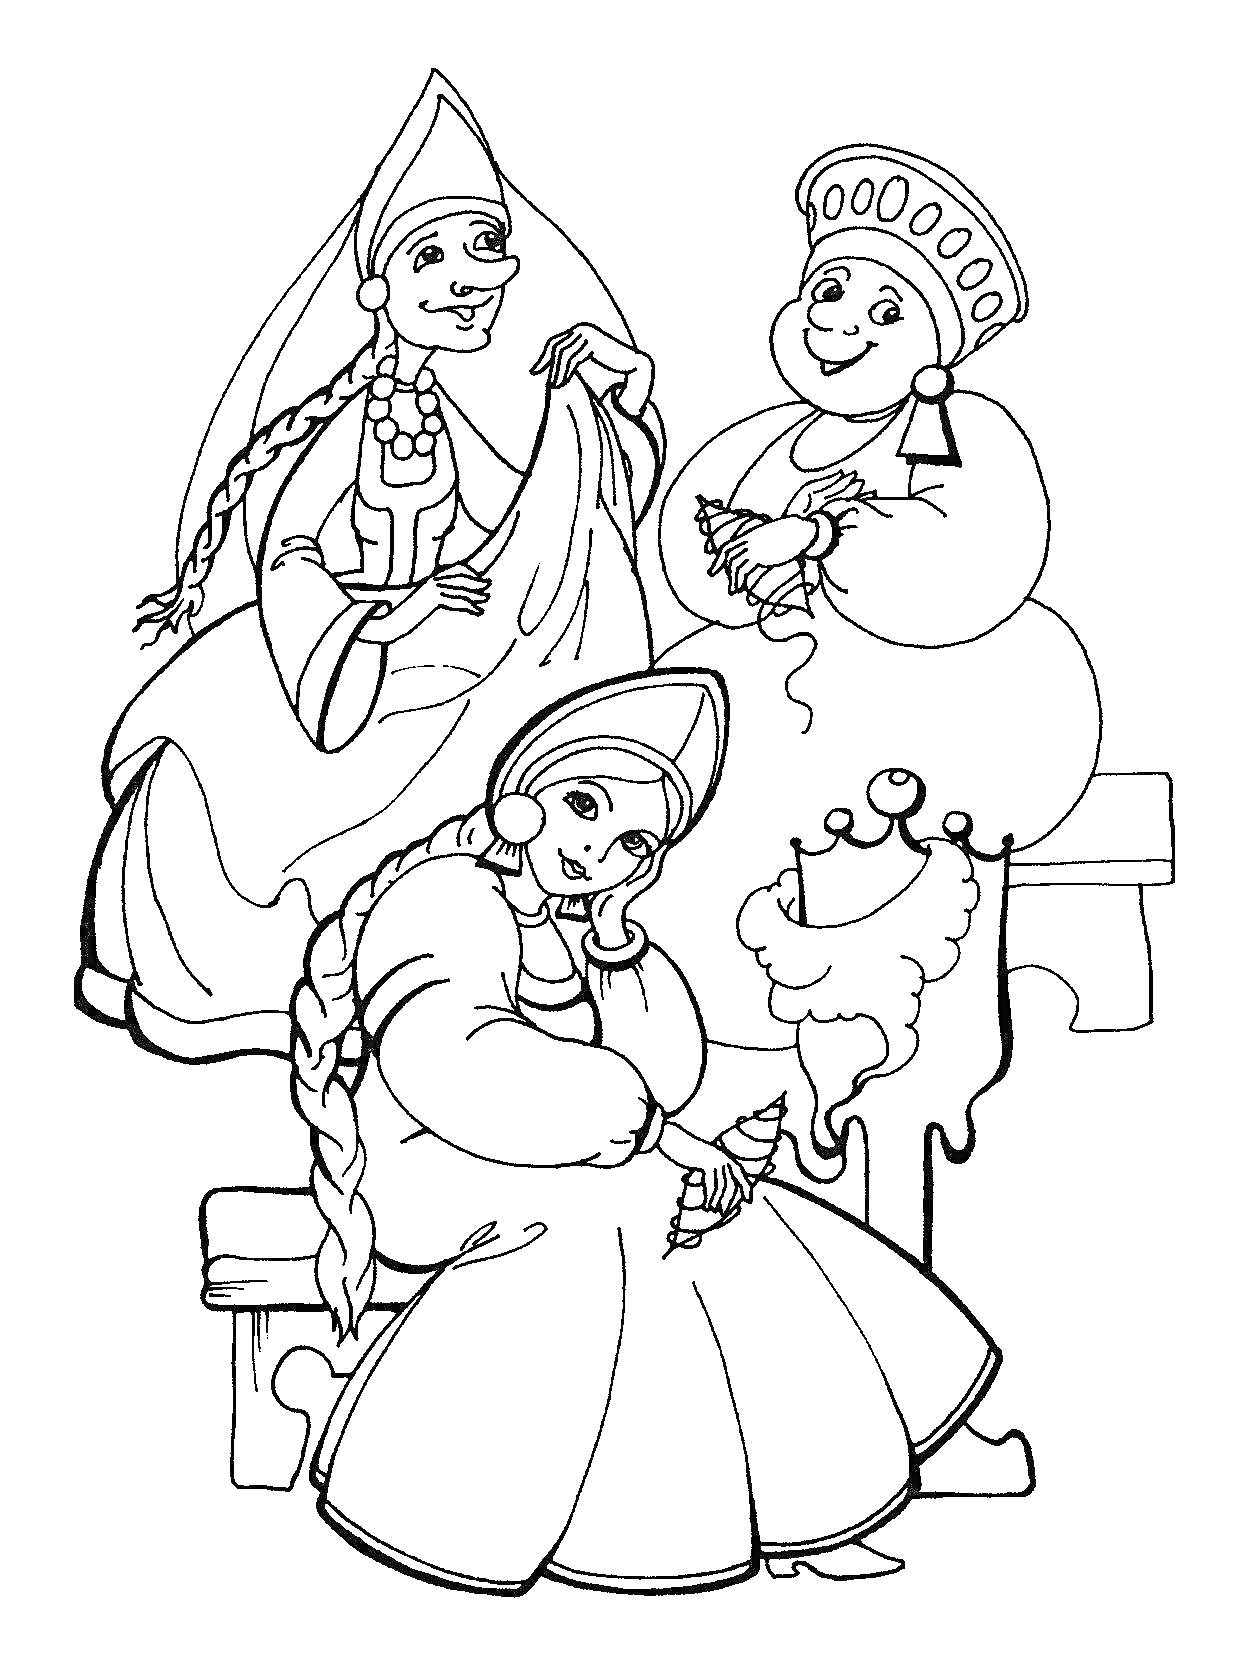 Три женщины в традиционных нарядах на скамеечке с прялкой из сказки о Царе Салтане